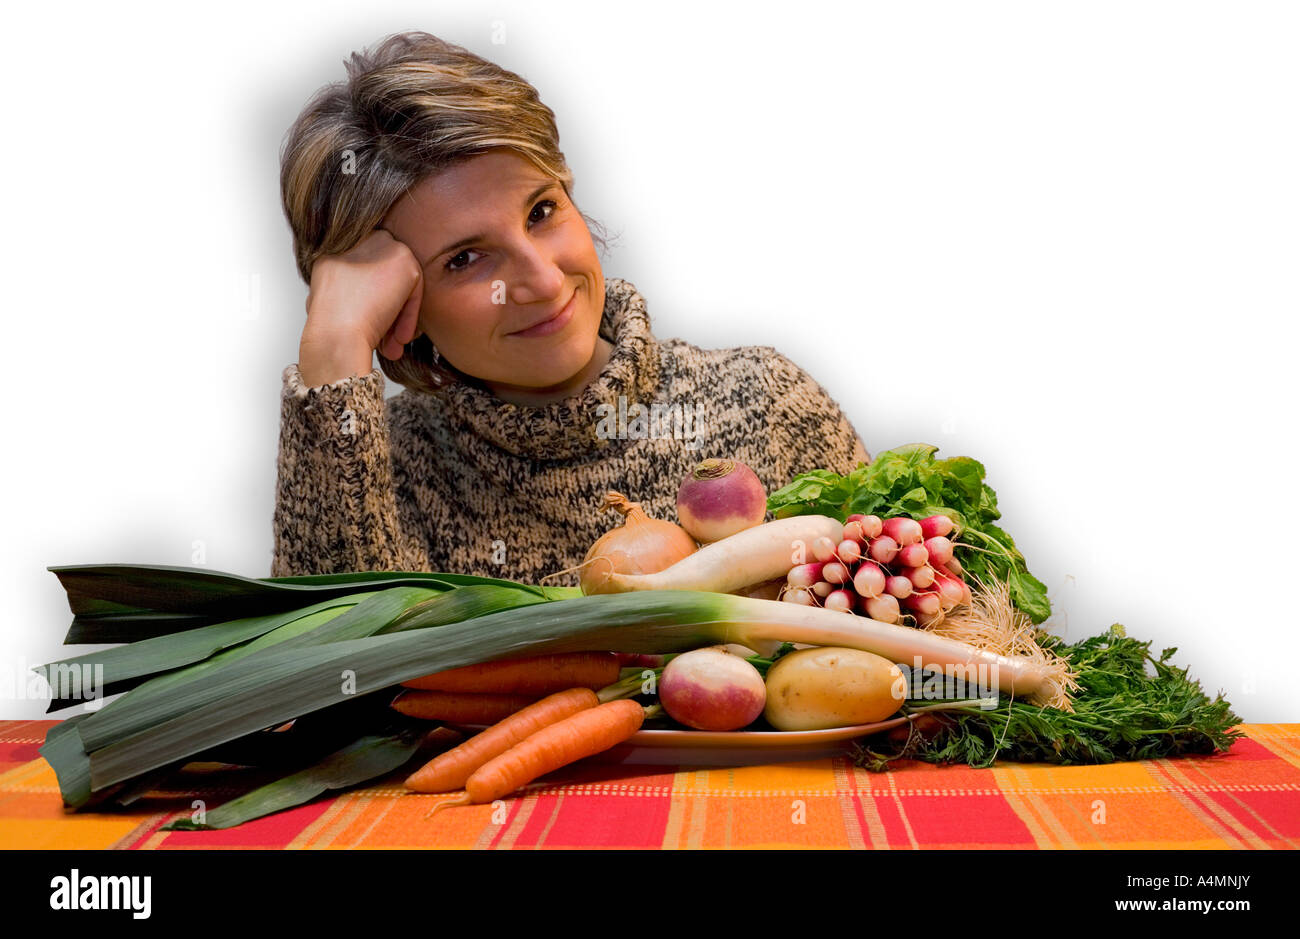 Young Lady proud of her organic vegetable harvesting. Jeune femme fière de sa récolte de légumes biologiques. Stock Photo